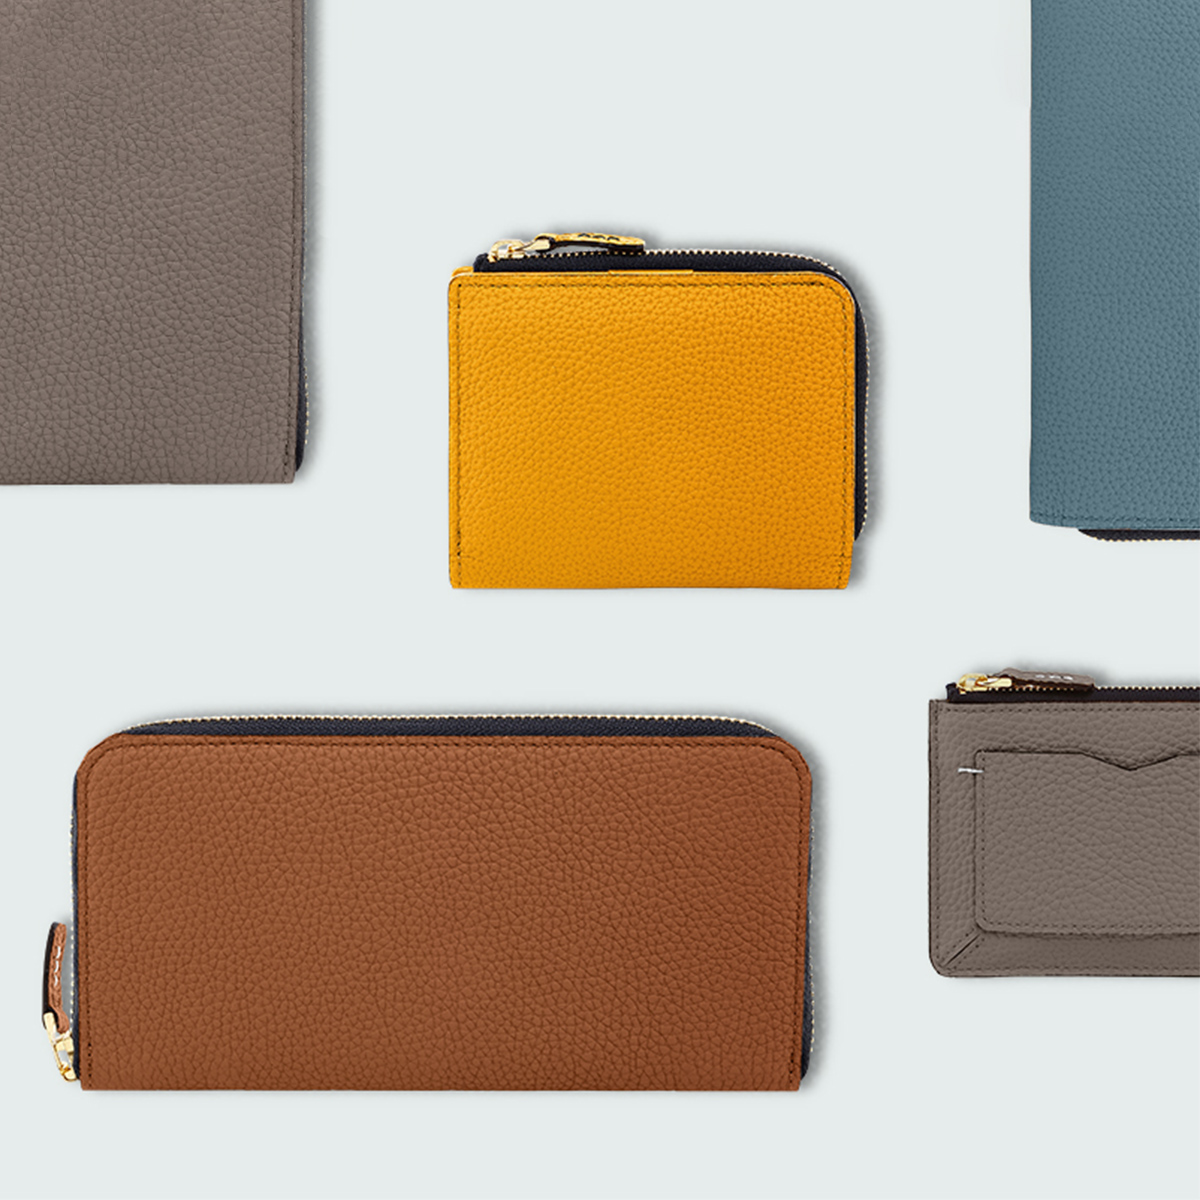 使いやすい財布ってどんな財布？財布の種類と選び方をご紹介します